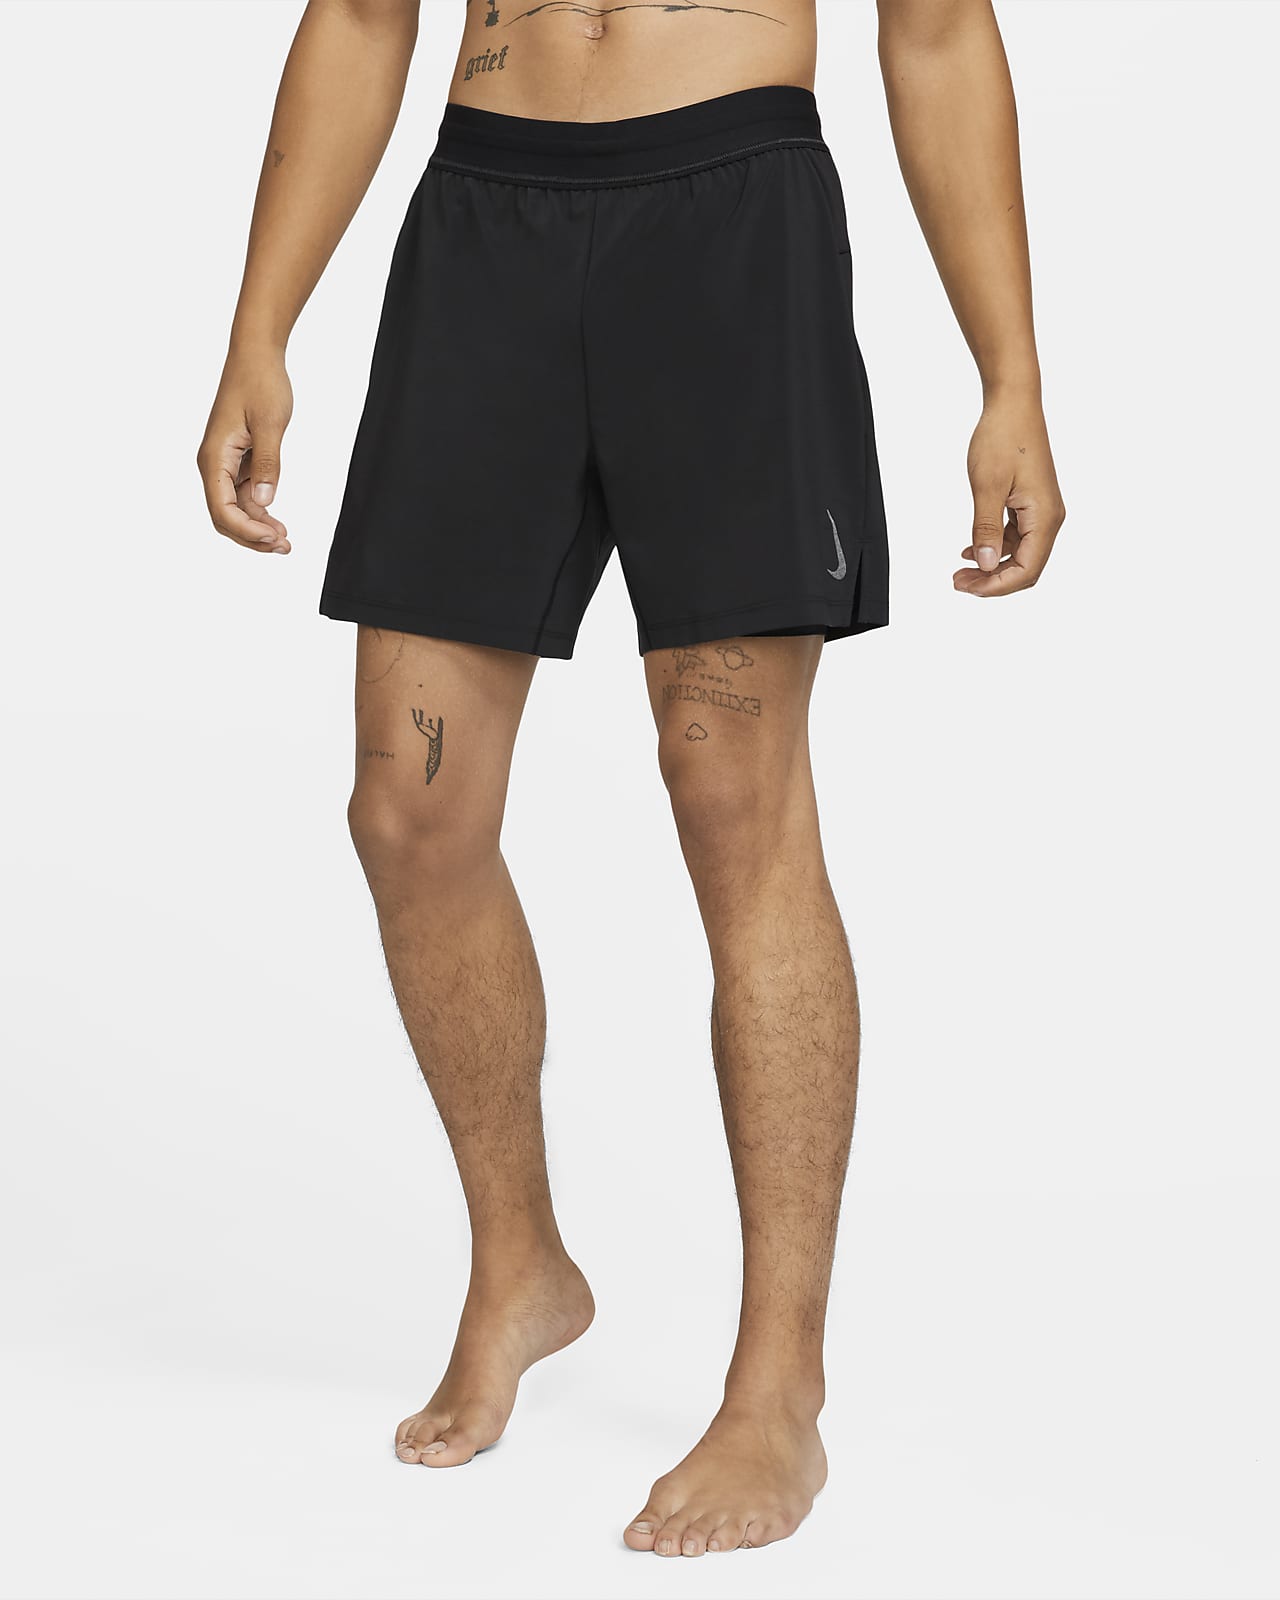 Nike Yoga 2-in-1 Shorts.